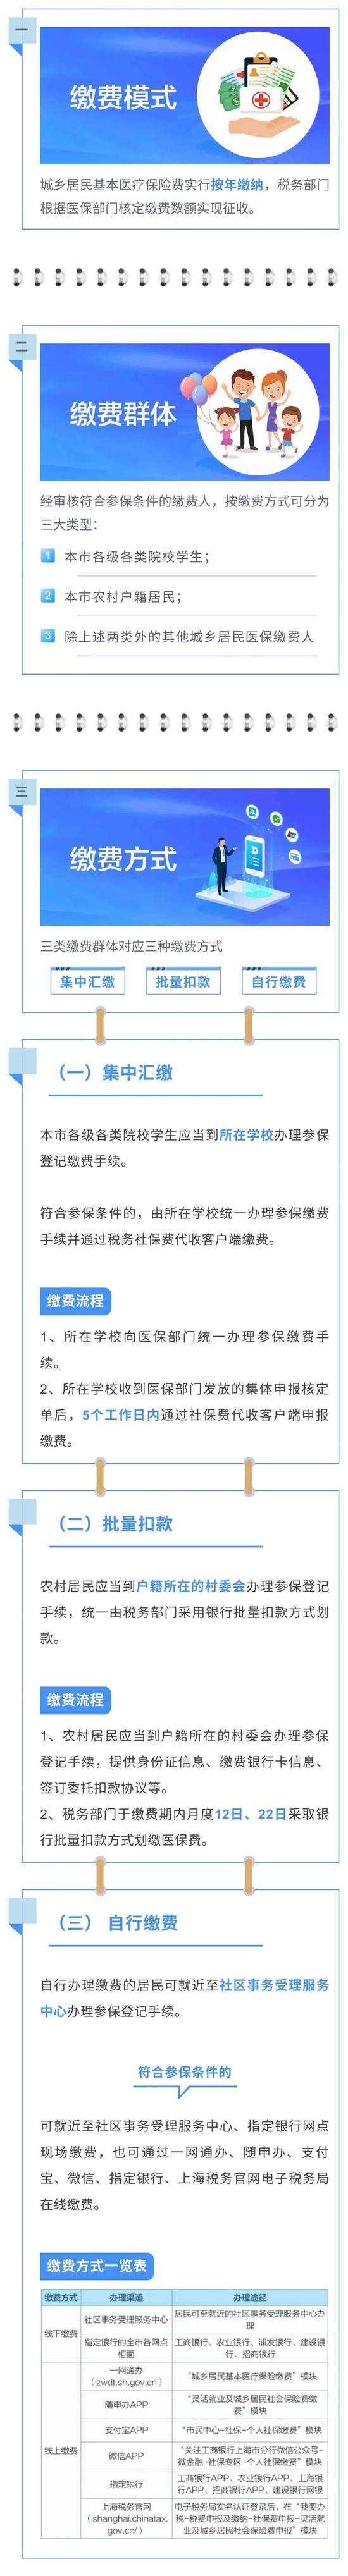 上海2021年度城乡居民医保参保登记和个人缴费即日起受理